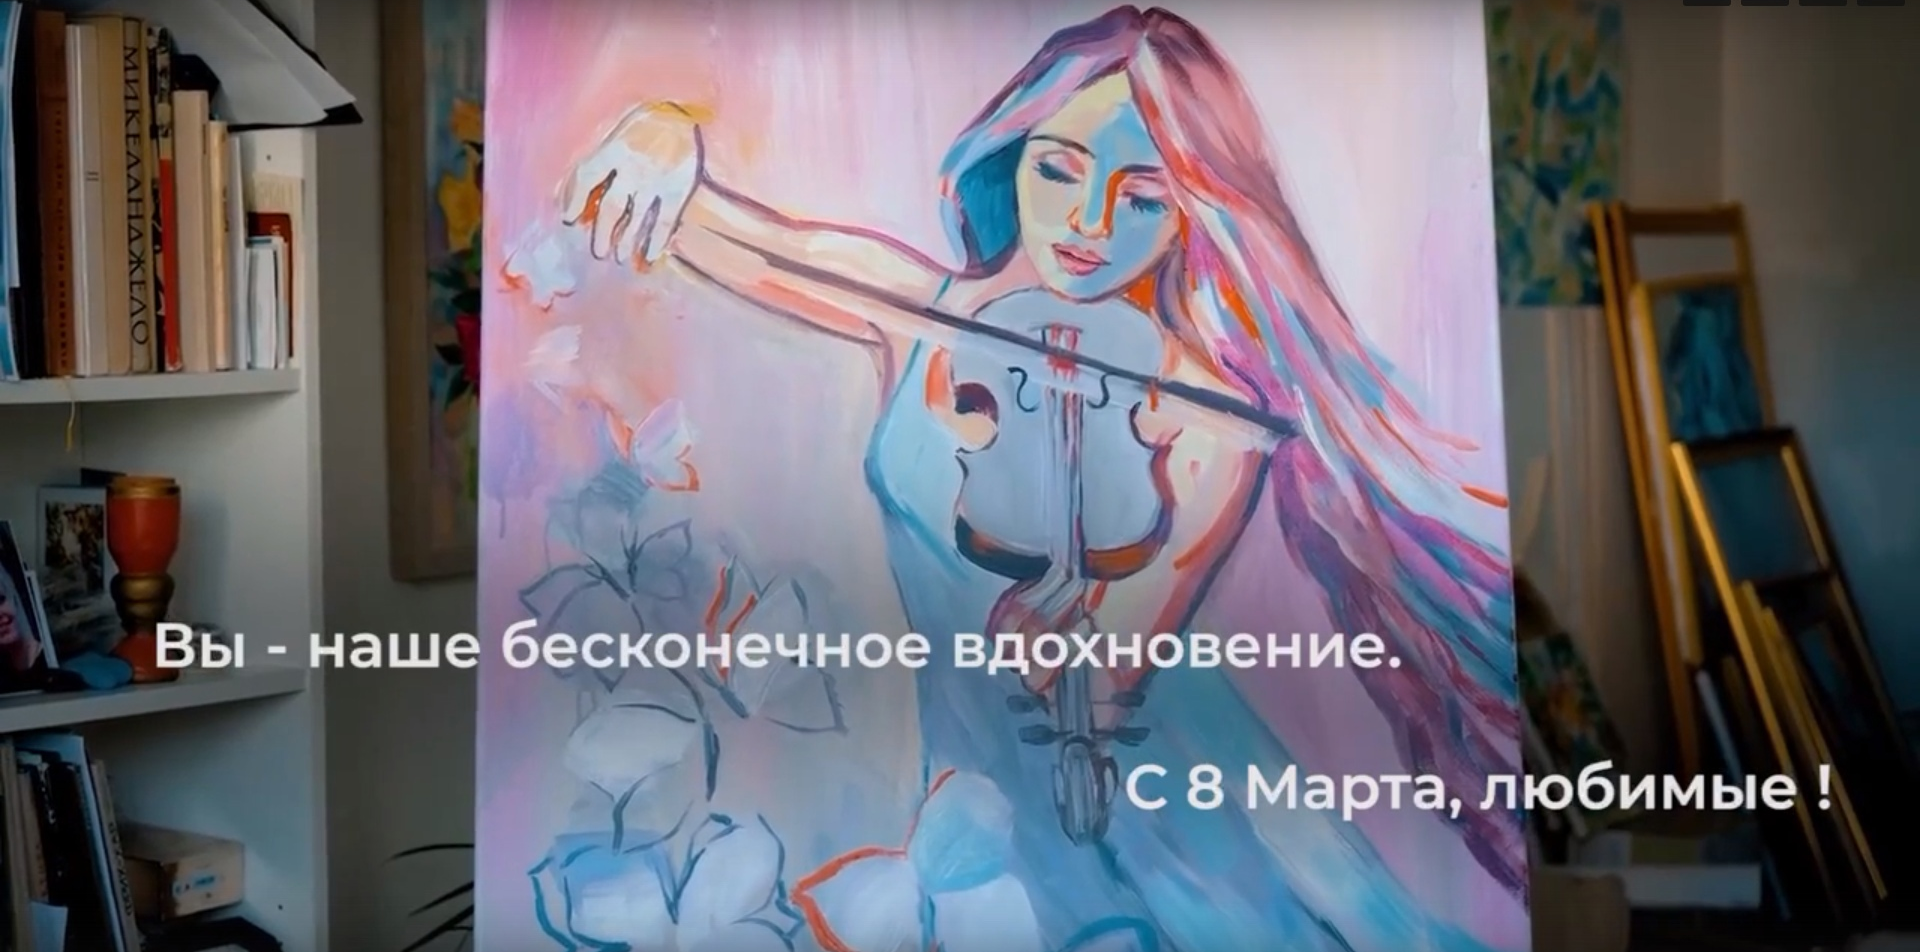 «С 8 Марта, милые!». Алексей Русских поздравил женщин праздничным видео